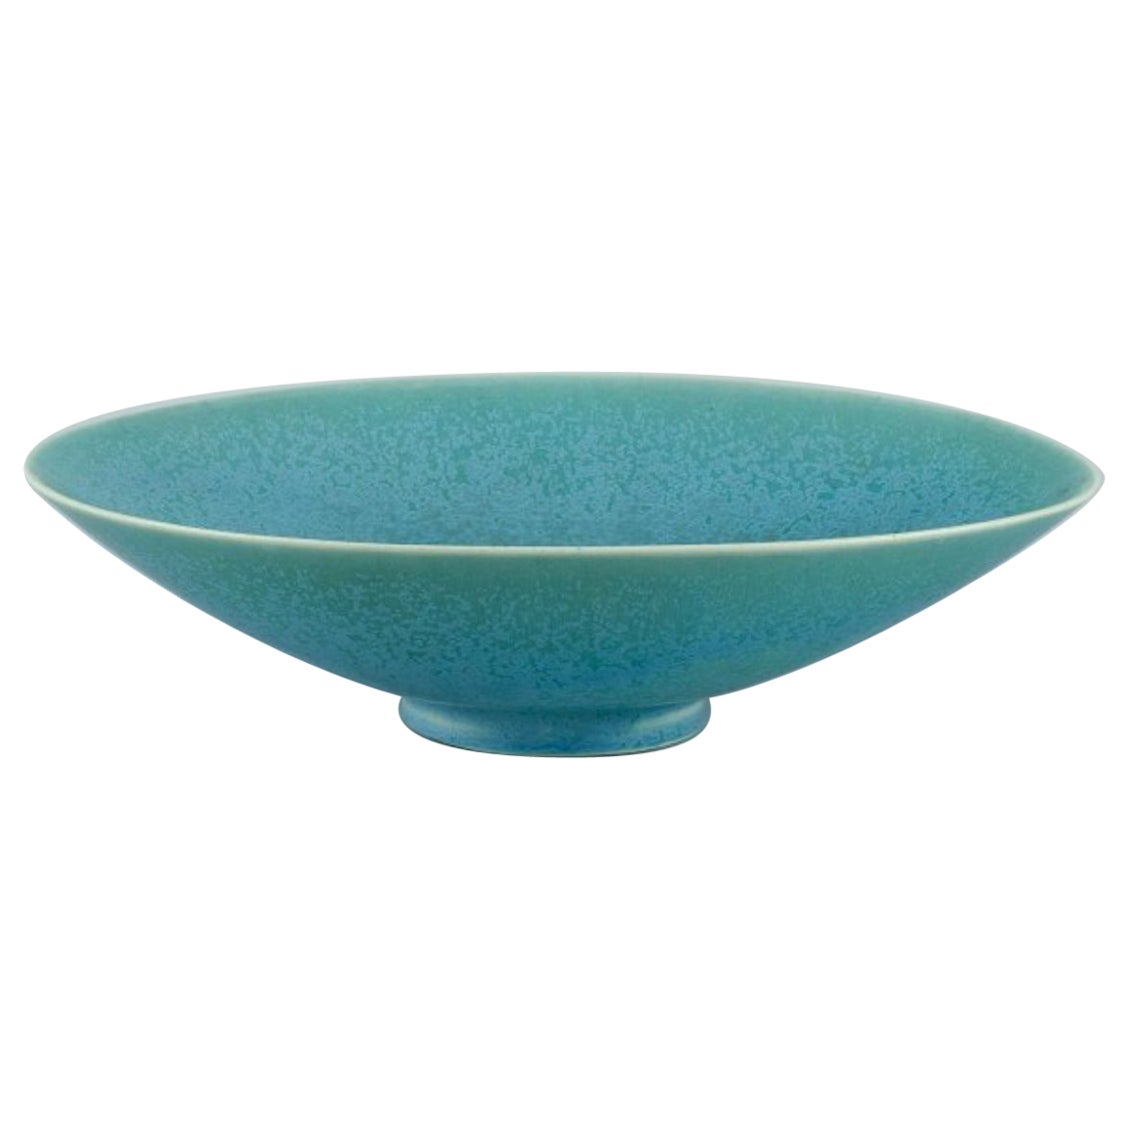 Berndt Friberg for Gustavsberg, Sweden. Oval ceramic bowl in eggshell glaze For Sale